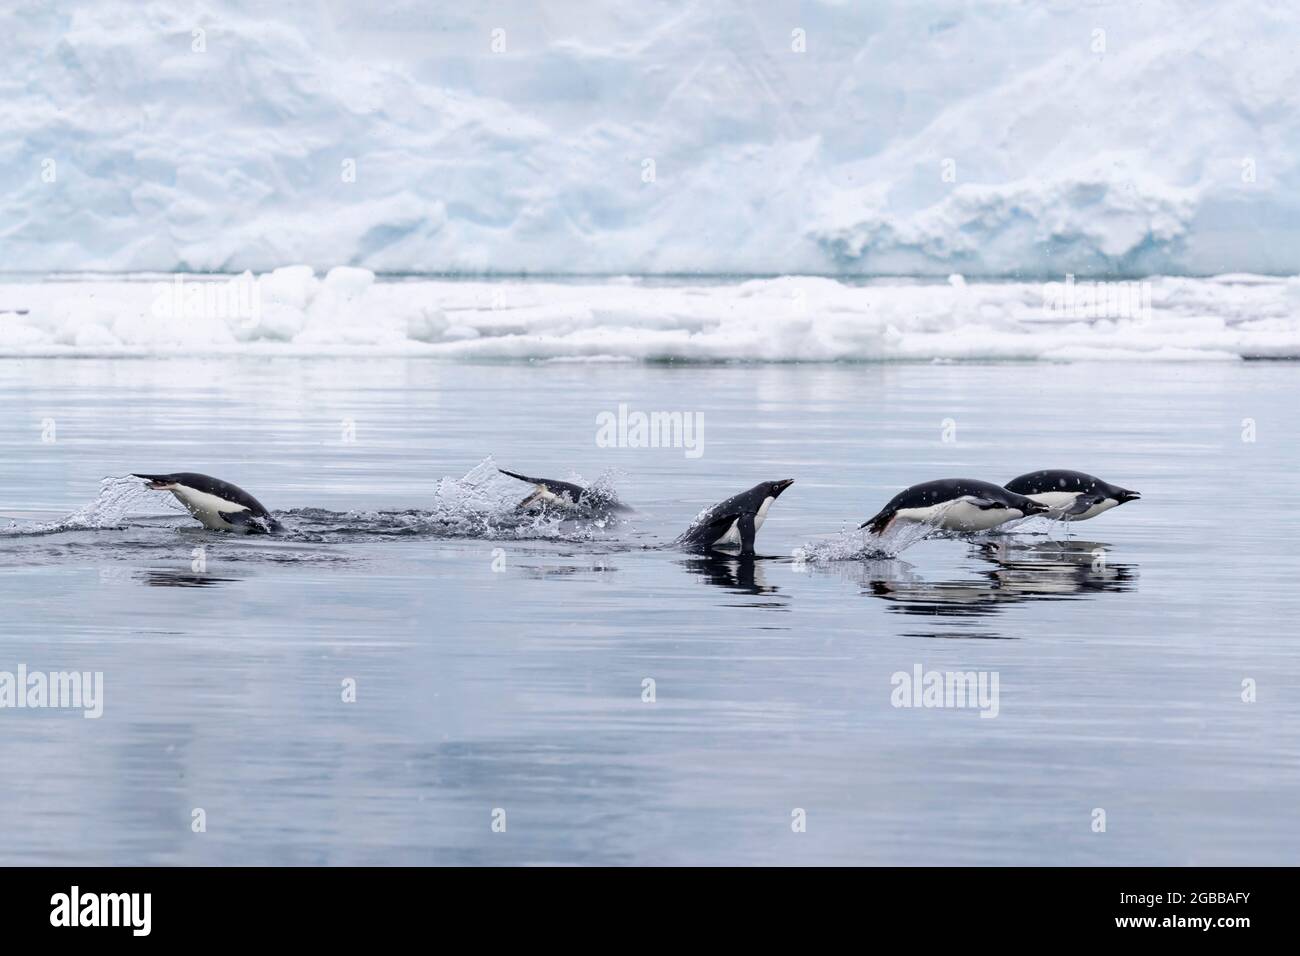 Adelie Penguins (Pygoscelis adeliae), marsouin dans la mer dans le détroit de l'Antarctique, la péninsule de la Trinité, l'Antarctique, régions polaires Banque D'Images